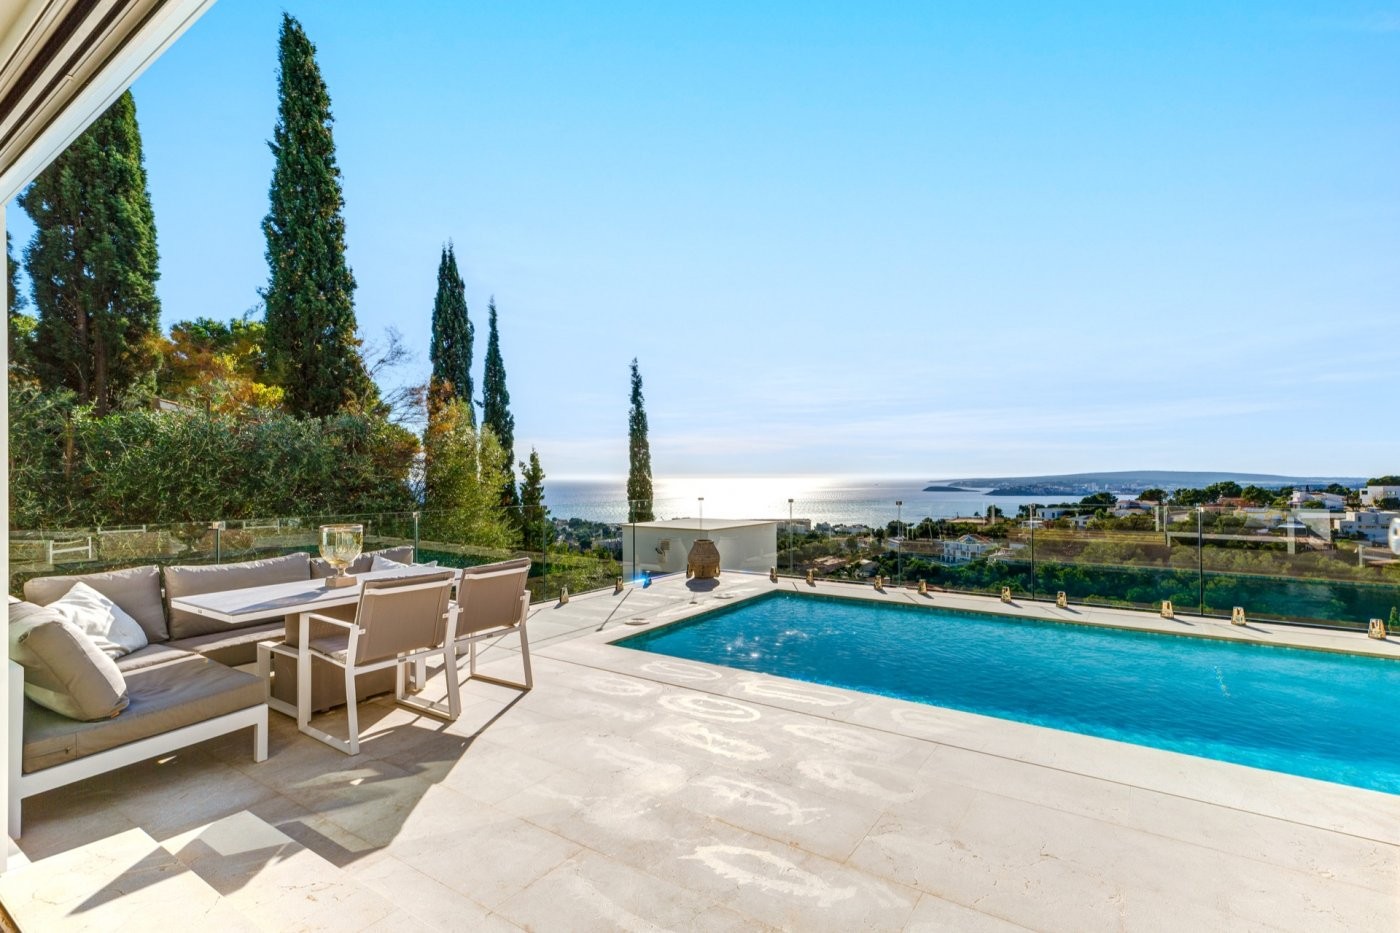 Fabulous modern design villa open to beautiful sea views in Costa d'en Blanes.